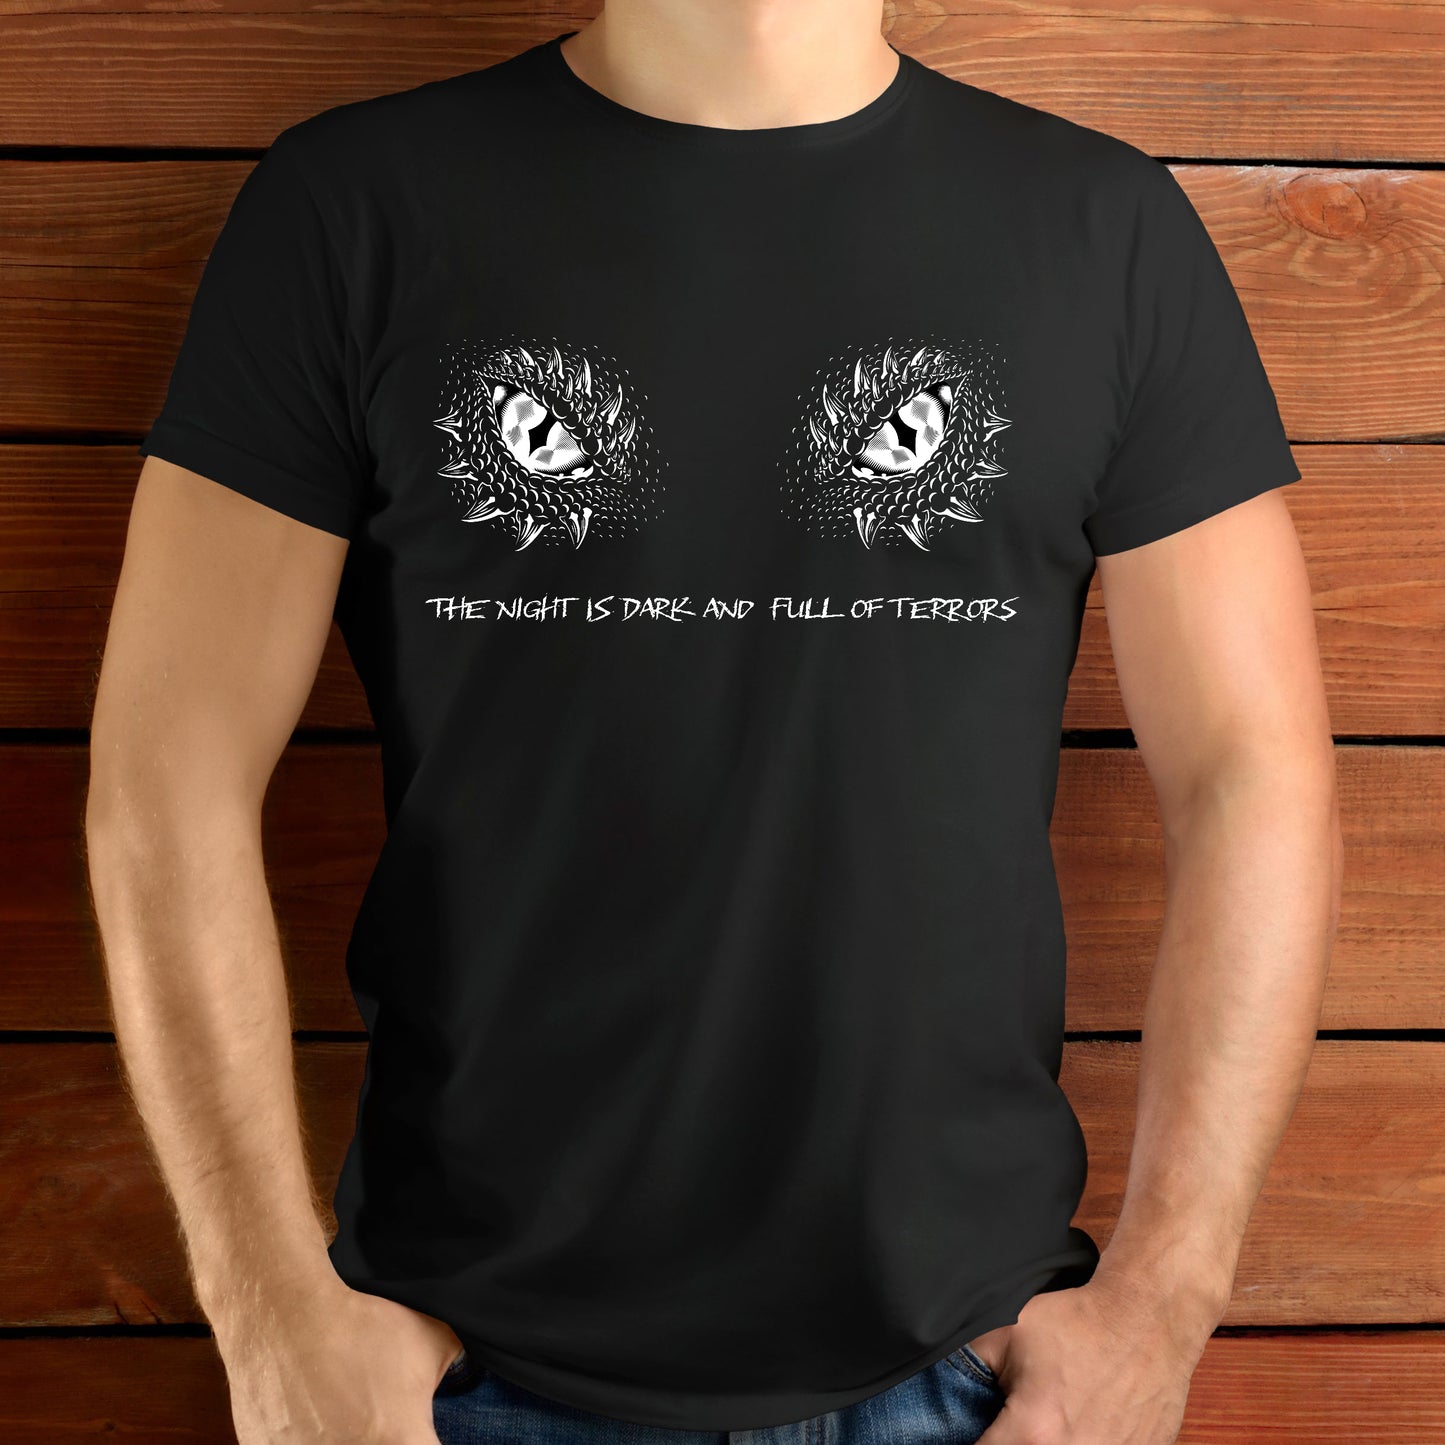 Dragon T-Shirt For Dragon Eyes TShirt For Reptile T Shirt For Dragon Gift For Mythological Gift